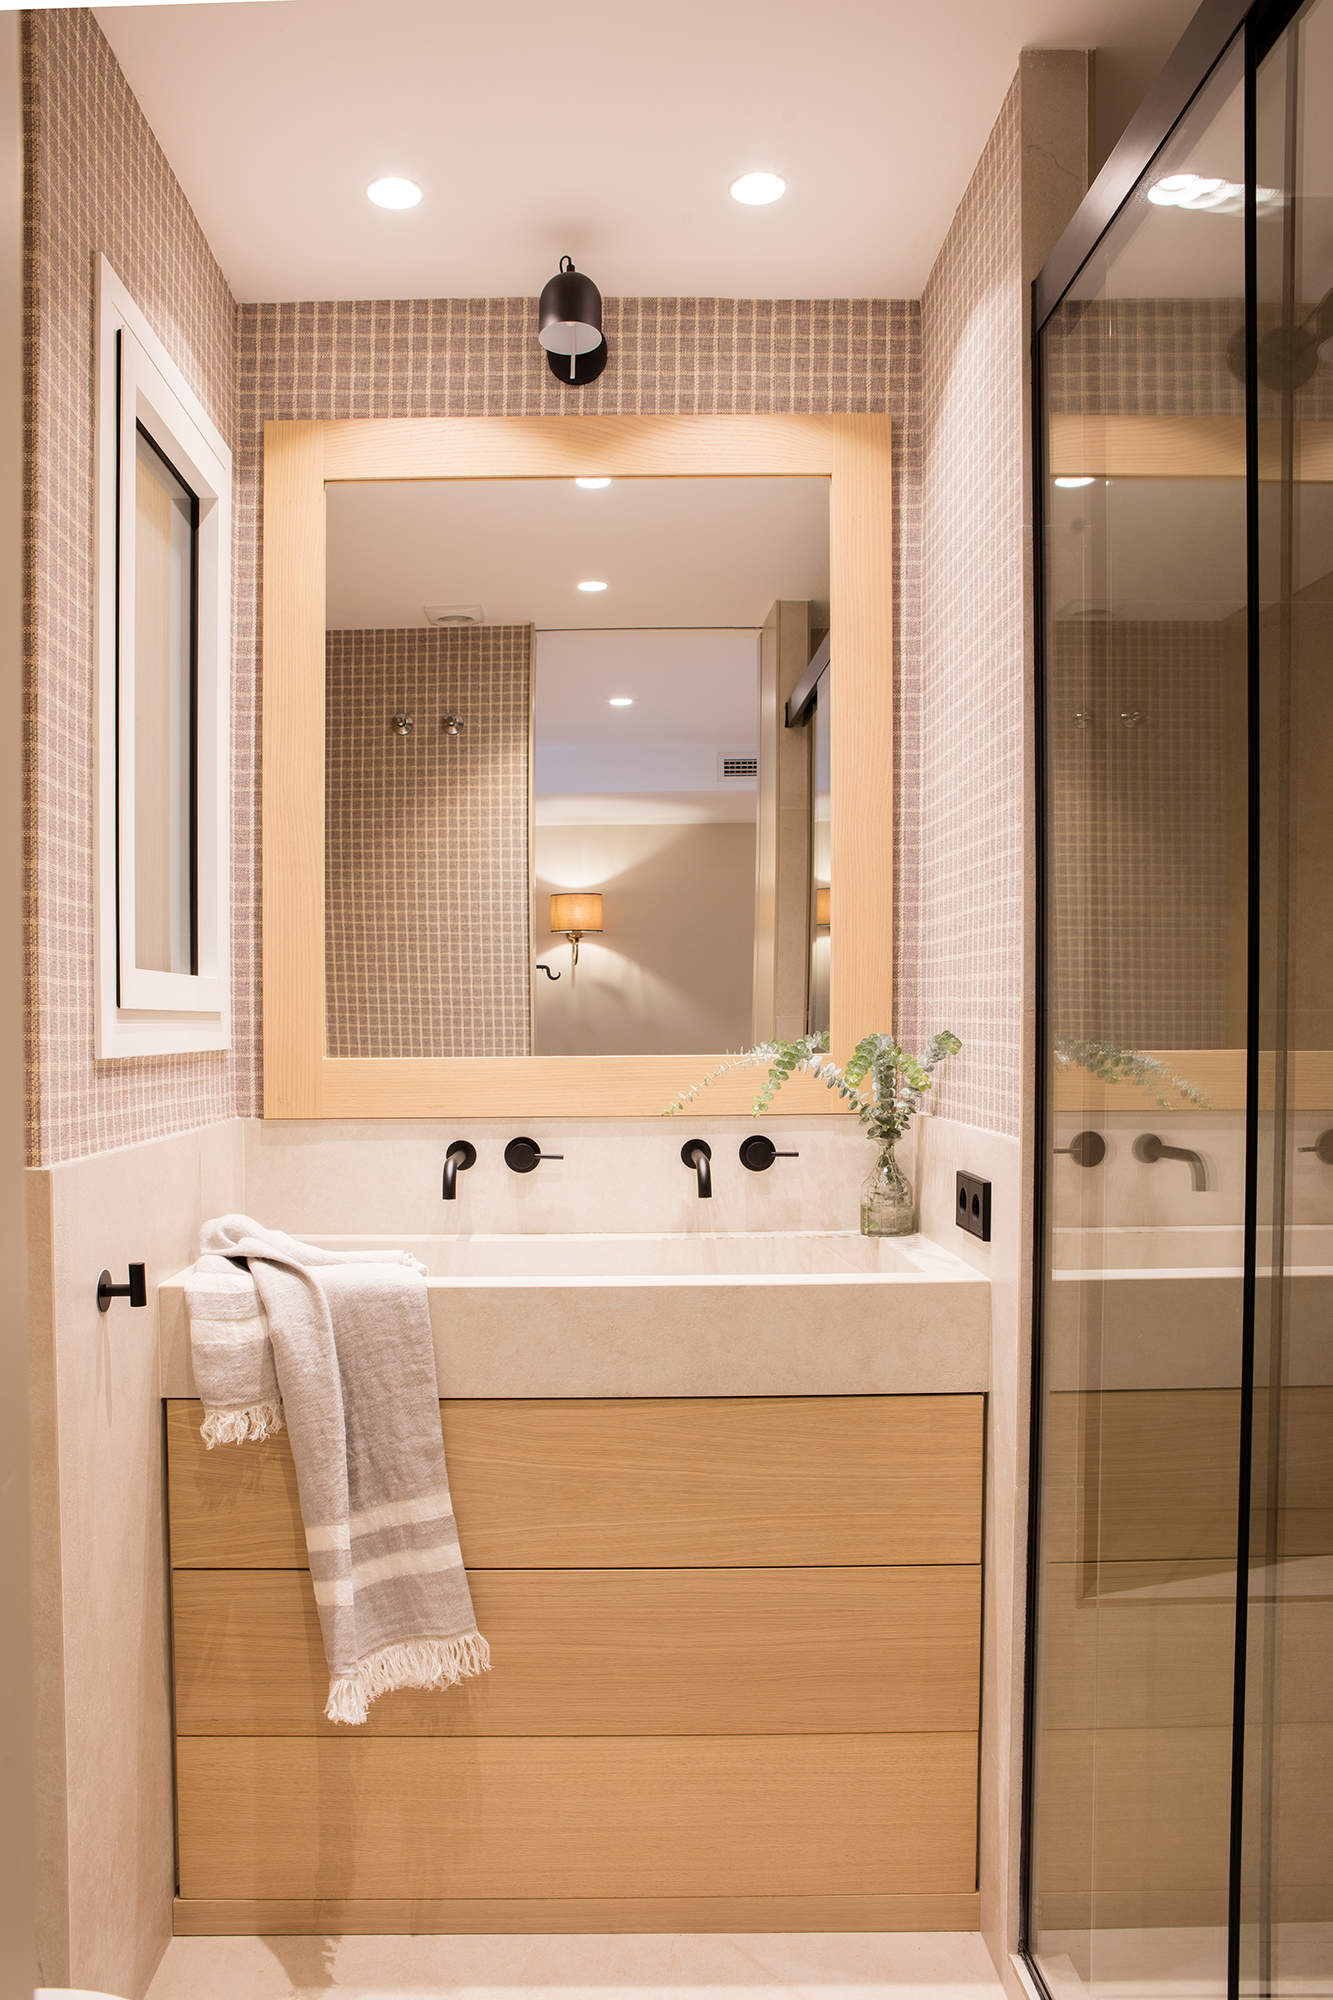 Mueble de baño encastrado entre paredes, papel pintado de cuadros marrones y mampara acristalada ahumada. 